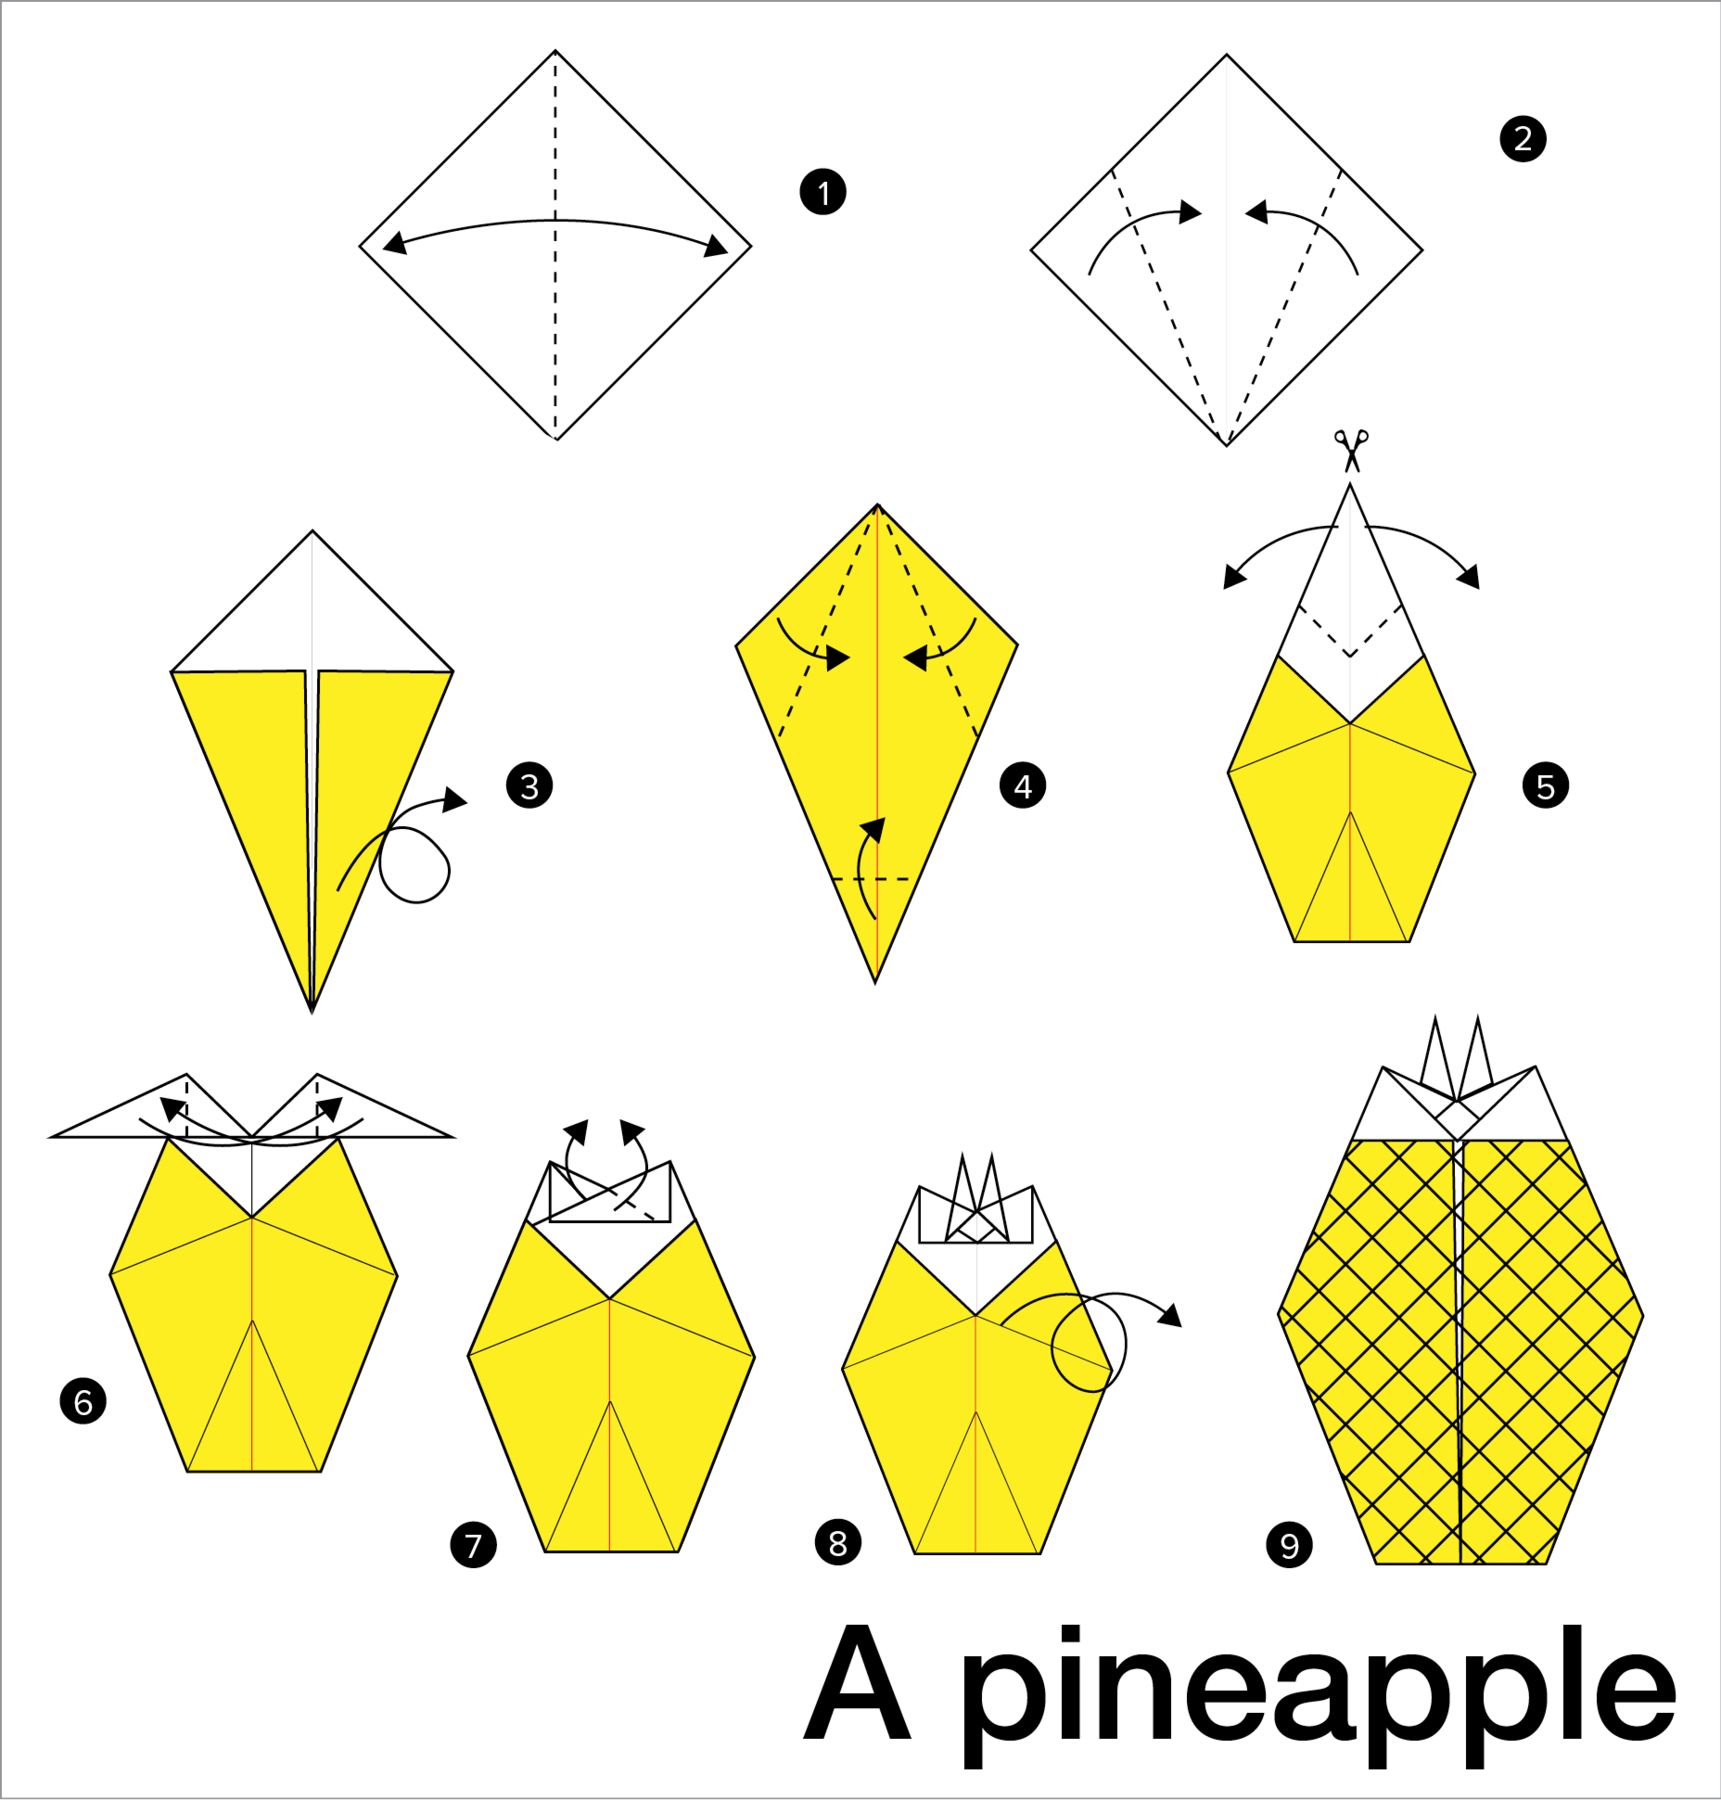 Ilustração. Instruções para criar uma dobradura com nove passos. Título no canto inferior direito: A pineapple. Um. Uma folha de papel quadrada, com as pontas voltadas para a parte superior e inferior. Há uma linha pontilhada ao centro indicando a dobra, com uma seta com duas pontas mostrando à esquerda e outra para a direita, indicando que o papel deve ser aberto após criar-se o vinco no meio. Dois. A folha de papel quadrada está na mesma posição e há duas linhas pontilhadas indicando que as pontas da esquerda e da direita devem ser dobradas e se encontrar no meio do quadrado, onde há um vinco. Três. A dobradura agora mostra um triângulo longo de ponta cabeça na cor amarela, que é a outra face do papel, e um triângulo menor e baixo na parte de cima, na cor branca, que é a face interna do papel. Uma seta que dá a volta em si mesma indica que a dobradura deve ser virada com a face para baixo. Quatro. A dobradura agora mostra a face amarela do papel. Duas setas, uma da esquerda e a direita e duas linhas pontilhadas formando um V invertido indicam que as pontas devem ser dobradas e se unir ao centro. Uma outra seta na ponta de baixo da dobradura indica que ela deve ser dobrada verticalmente para dentro, de acordo com uma linha pontilhada de cerca de um quinto do comprimento total da altura da dobradura. Cinco. A dobradura agora tem a ponta superior mais alongada, mostrando a parte interna do papel. Um ícone de tesoura no topo da ilustração indica um corte vertical no meio de cerca de um terço do comprimento da altura da dobradura. Duas setas apontando para a esquerda e para a direita indicam que após o corte as pontas devem ser dobradas para fora. Seis. A parte superior da dobradura ficou com dois triângulos, um à esquerda e outro à direita. Há linhas pontilhadas no meio desses dois triângulos indicando uma dobra bem no meio deles. Setas de fora para dentro indicam que as pontas devem ser dobradas para o centro, se sobrepondo. Sete. As pontas que foram dobradas no passo anterior e que se sobrepõem agora devem ser dobradas novamente, desta vez deixando as pontas apontadas para cima, formando dois picos que ficam lado a lado na parte de cima da dobradura. Oito. Uma seta em curva indica que a dobradura deve ser virada do avesso. Nove. Dobradura finalizada mostrando um tipo de hexágono comprido, onde no topo há quatro pontas, sendo duas delas maiores à esquerda e à direita, e duas menores e pontudas, lado a lado no centro e no topo da dobradura.